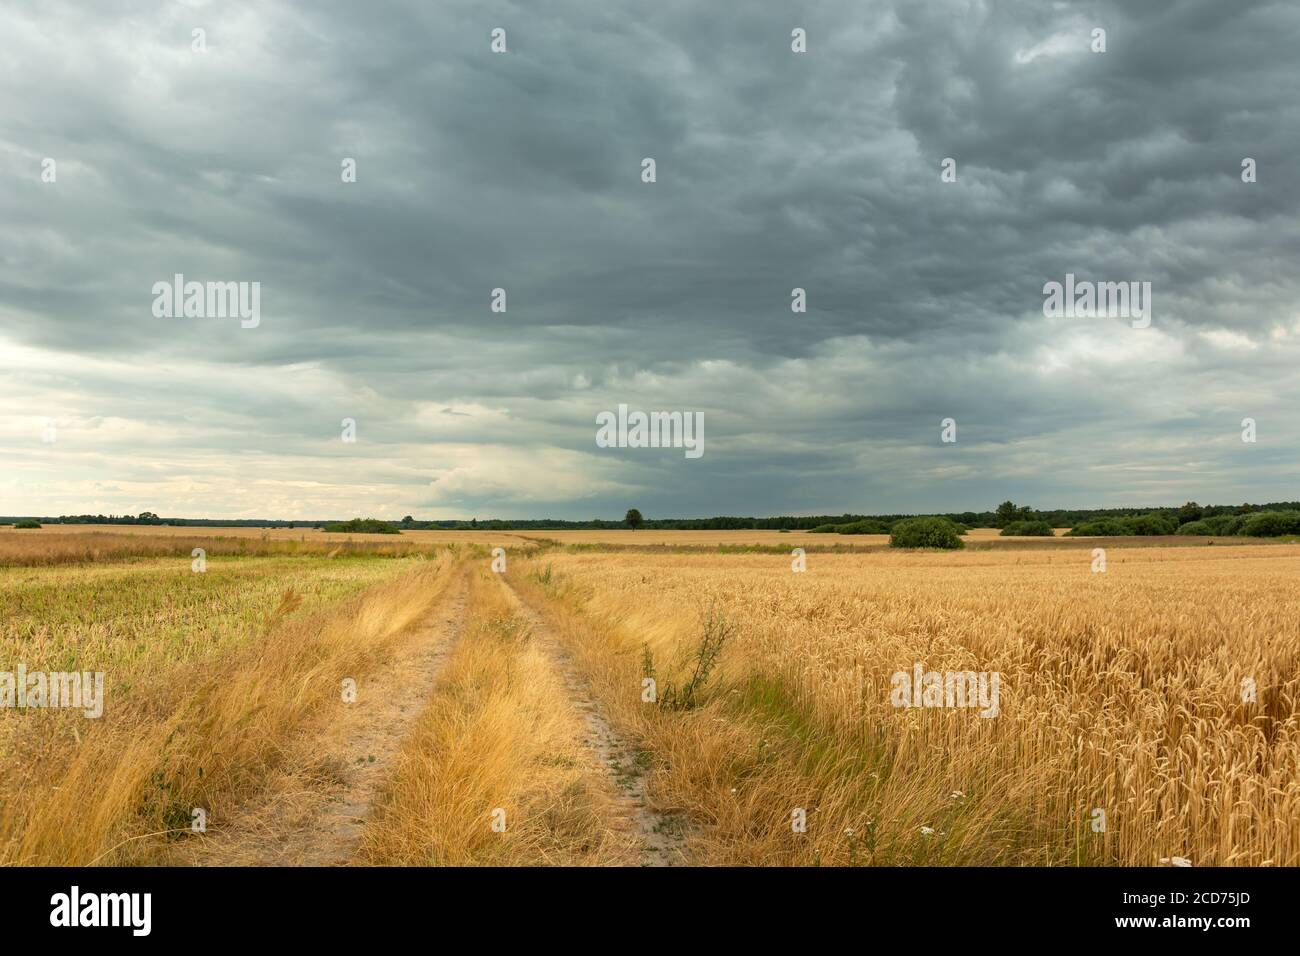 La strada attraverso i campi con grano e nuvole scure dentro il cielo Foto Stock